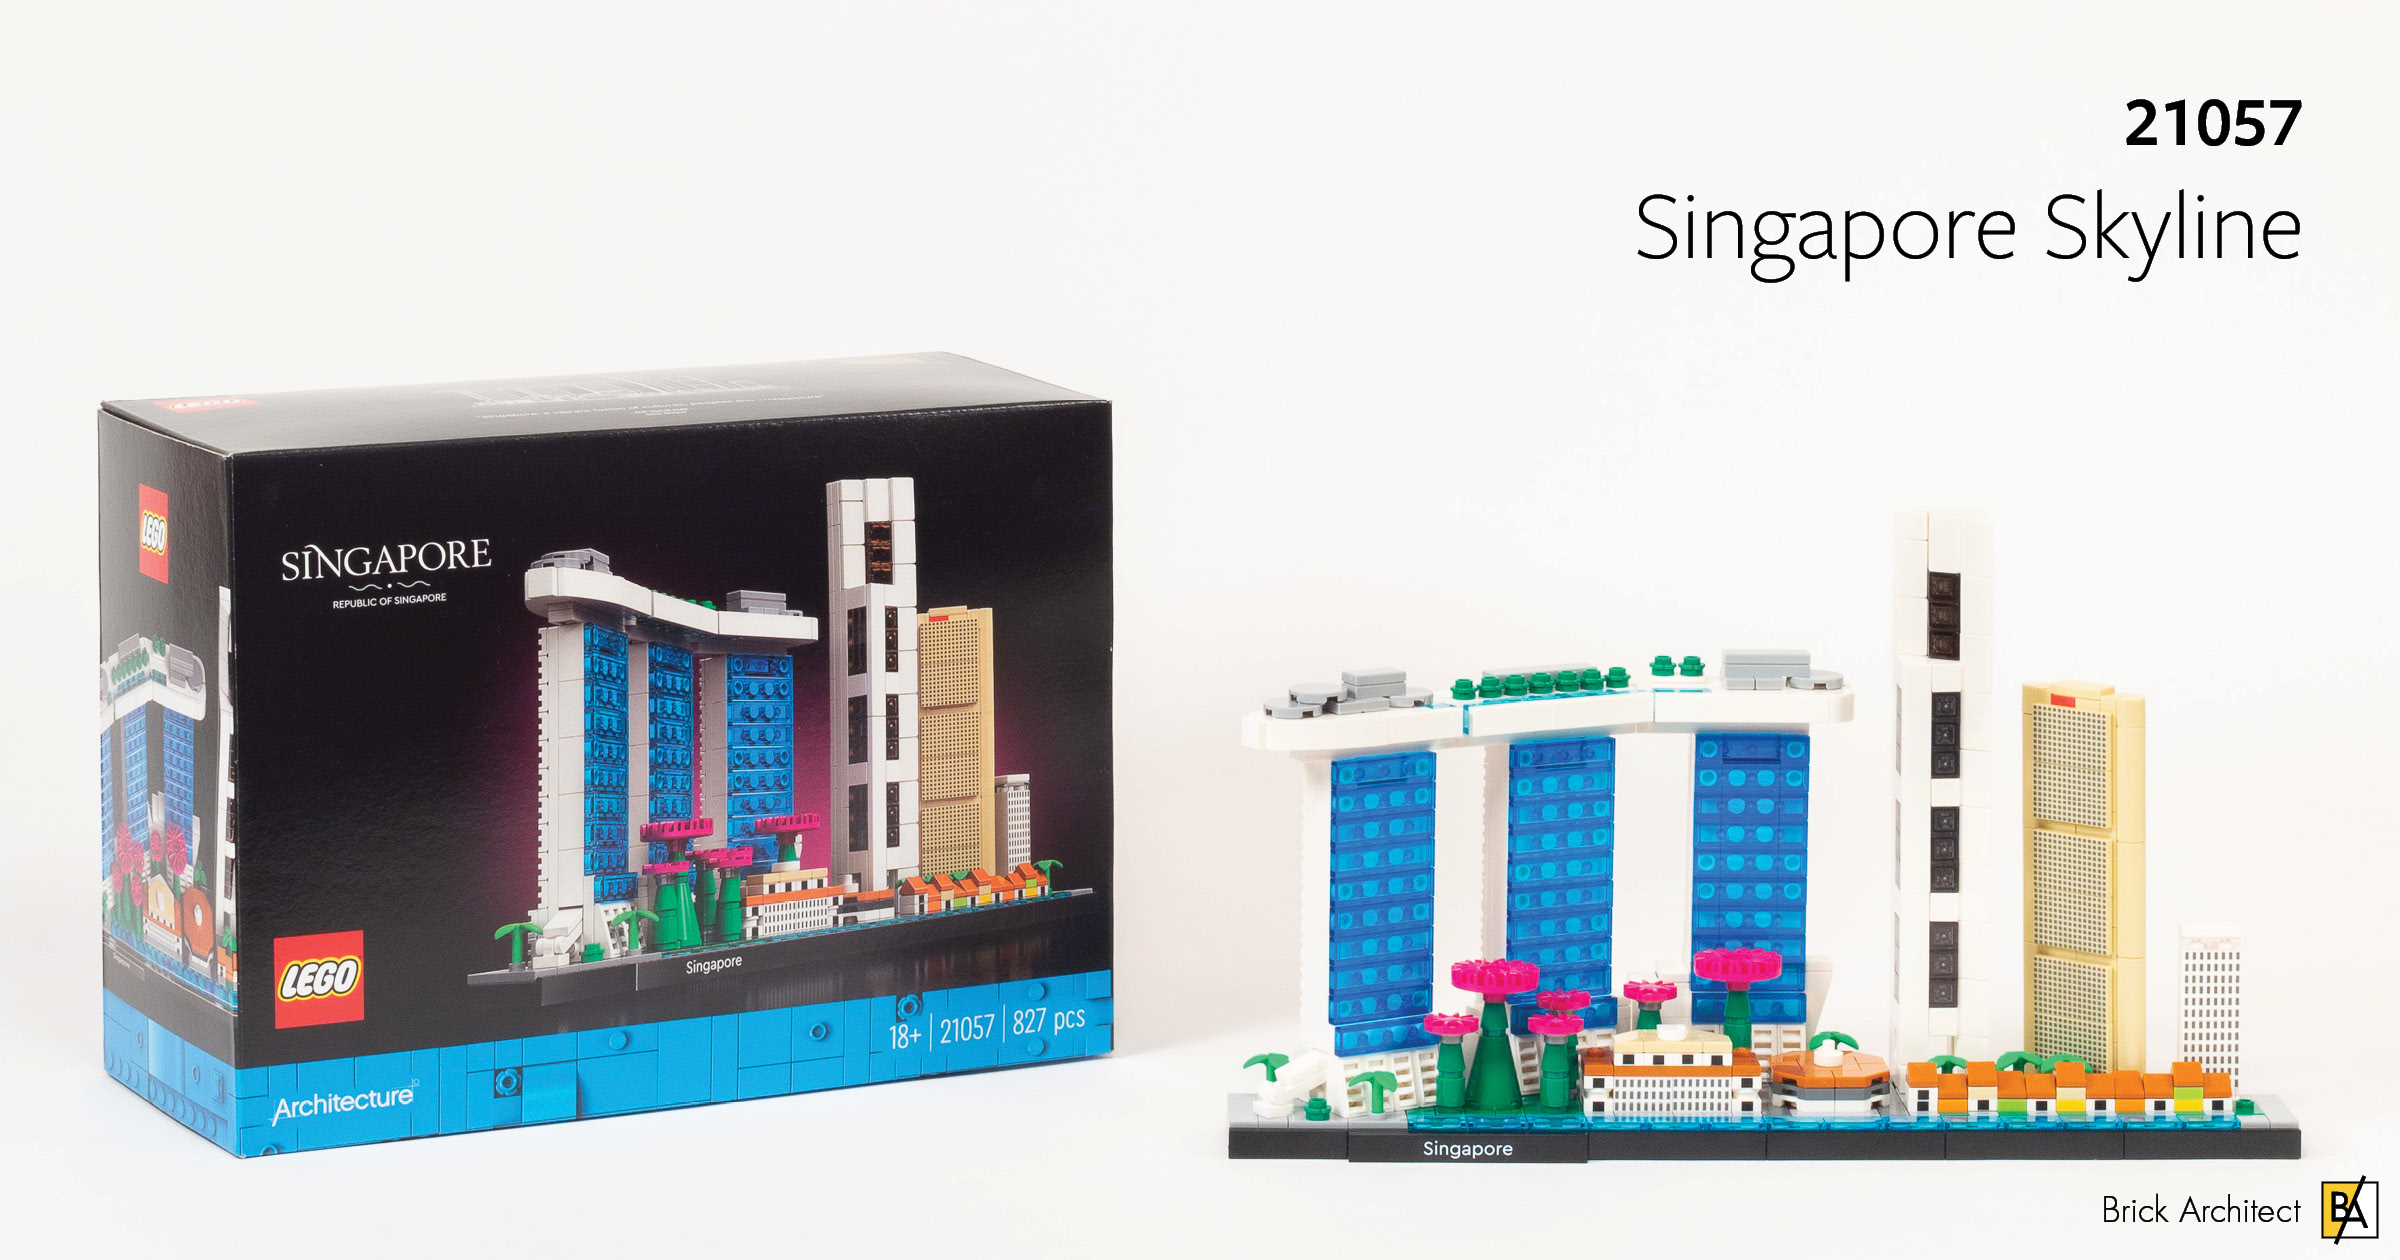 LEGO Architecture 21044 Paris Skyline Review - That Brick Site